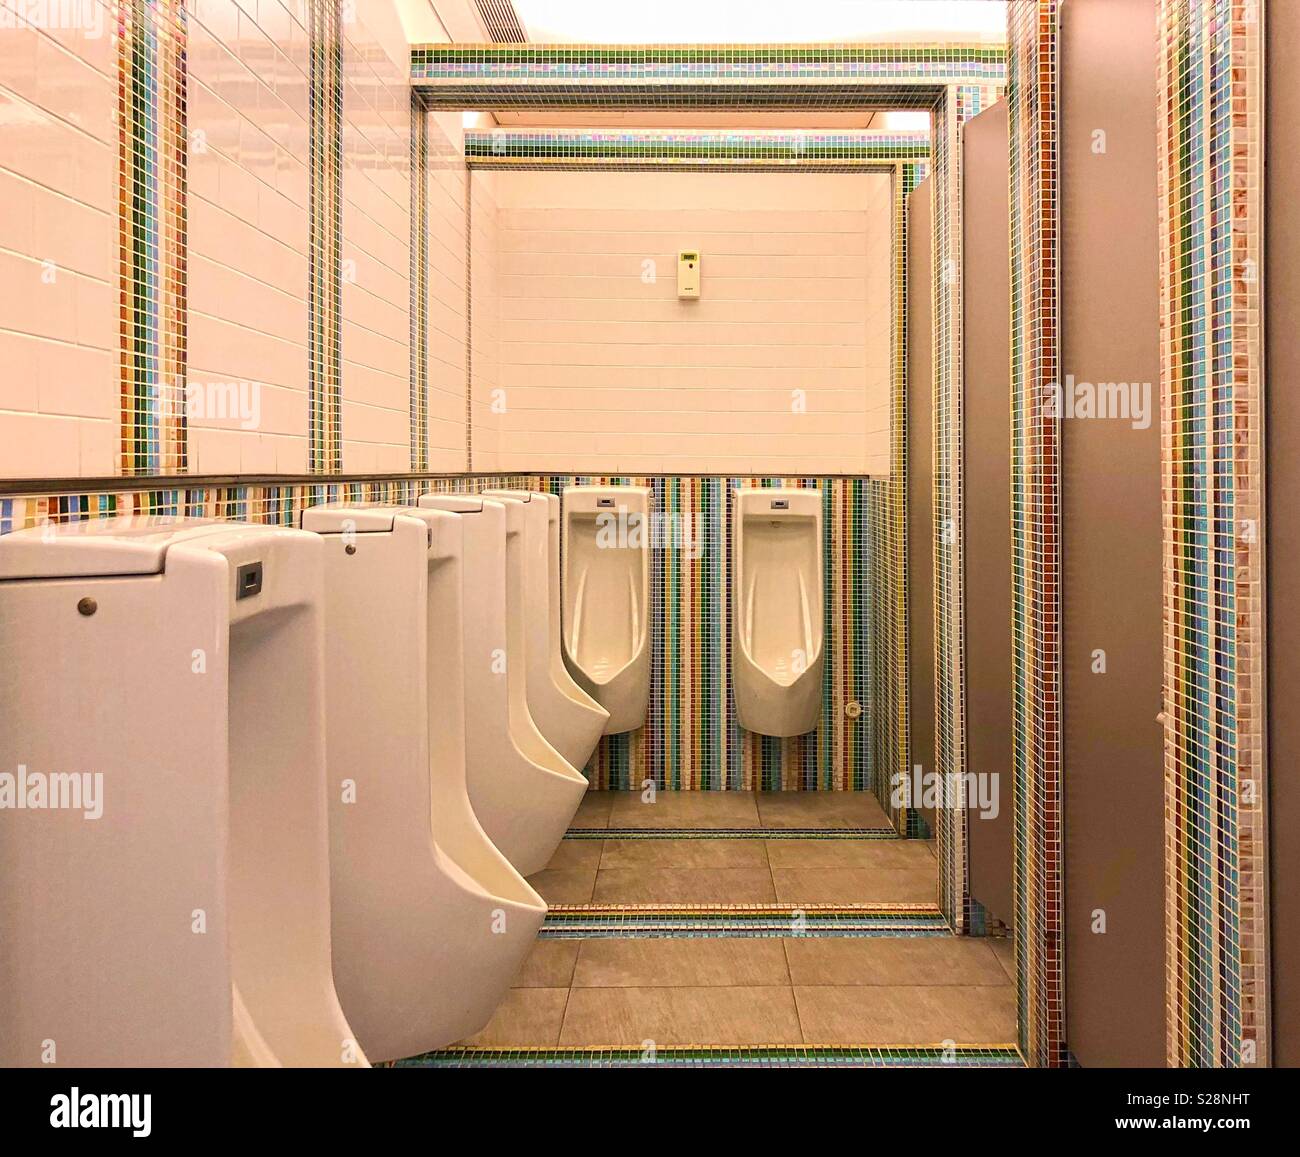 Hilera de urinarios en concepto retro wc masculinos con coloridos azulejos de cerámica antecedentes Foto de stock